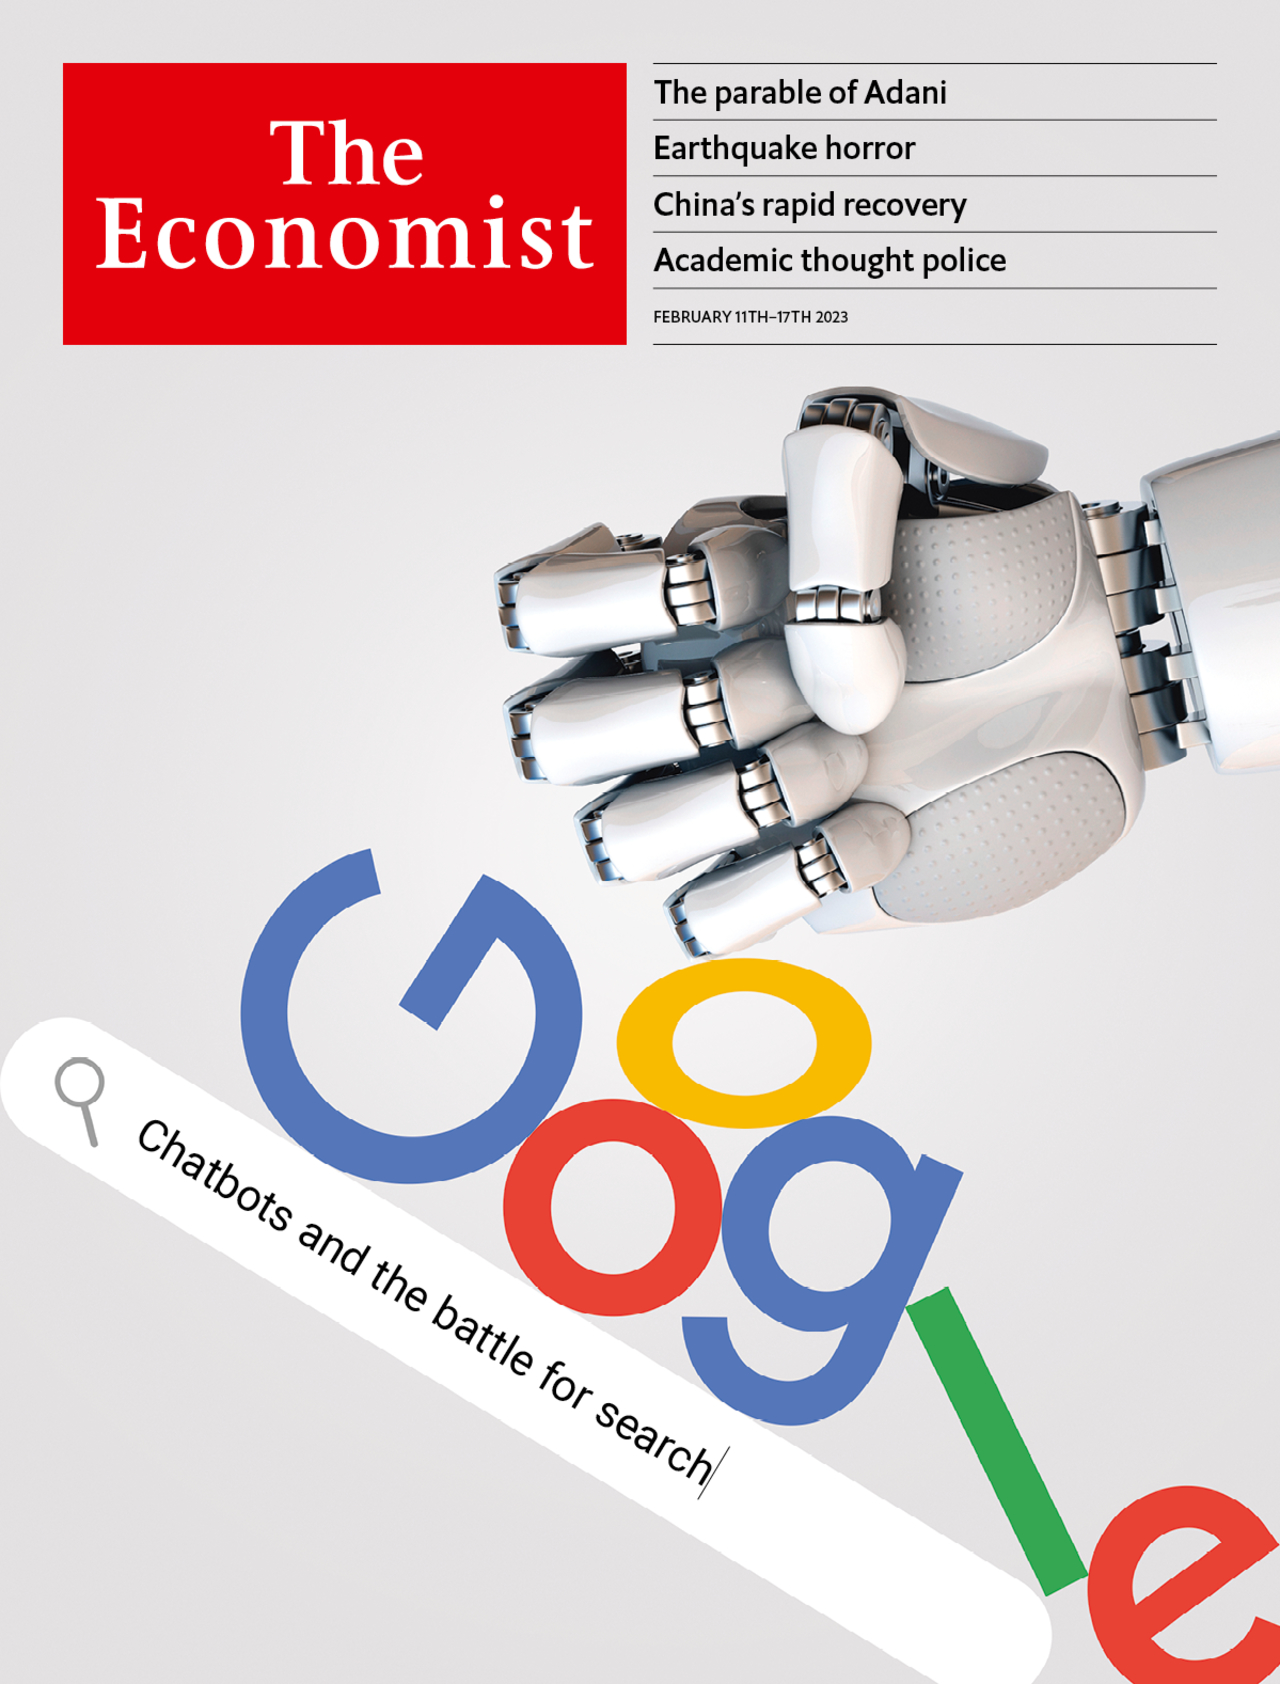 روایت اکونومیست از جنگ ChatGPT و گوگل 